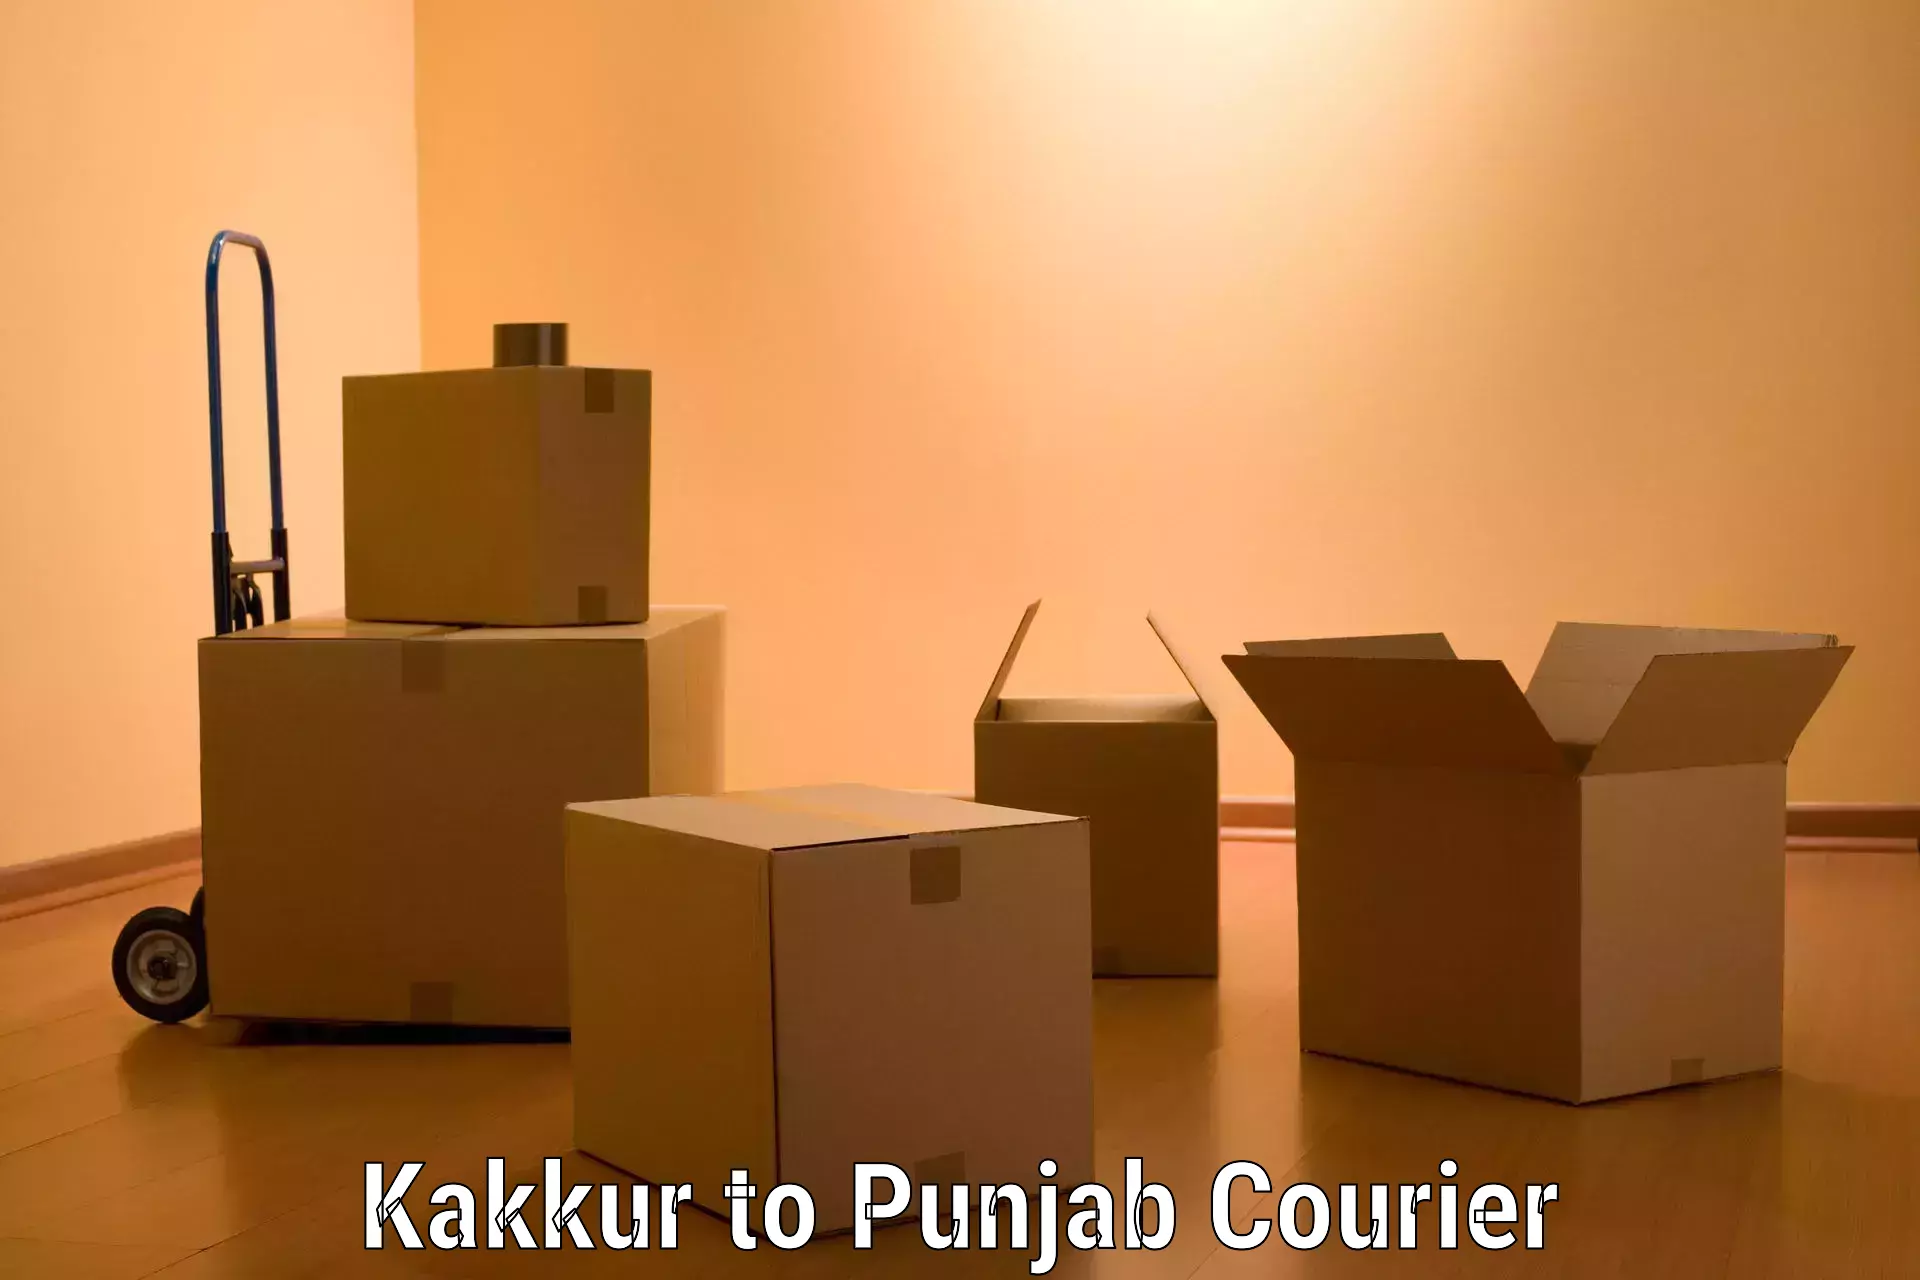 Furniture delivery service Kakkur to Machhiwara